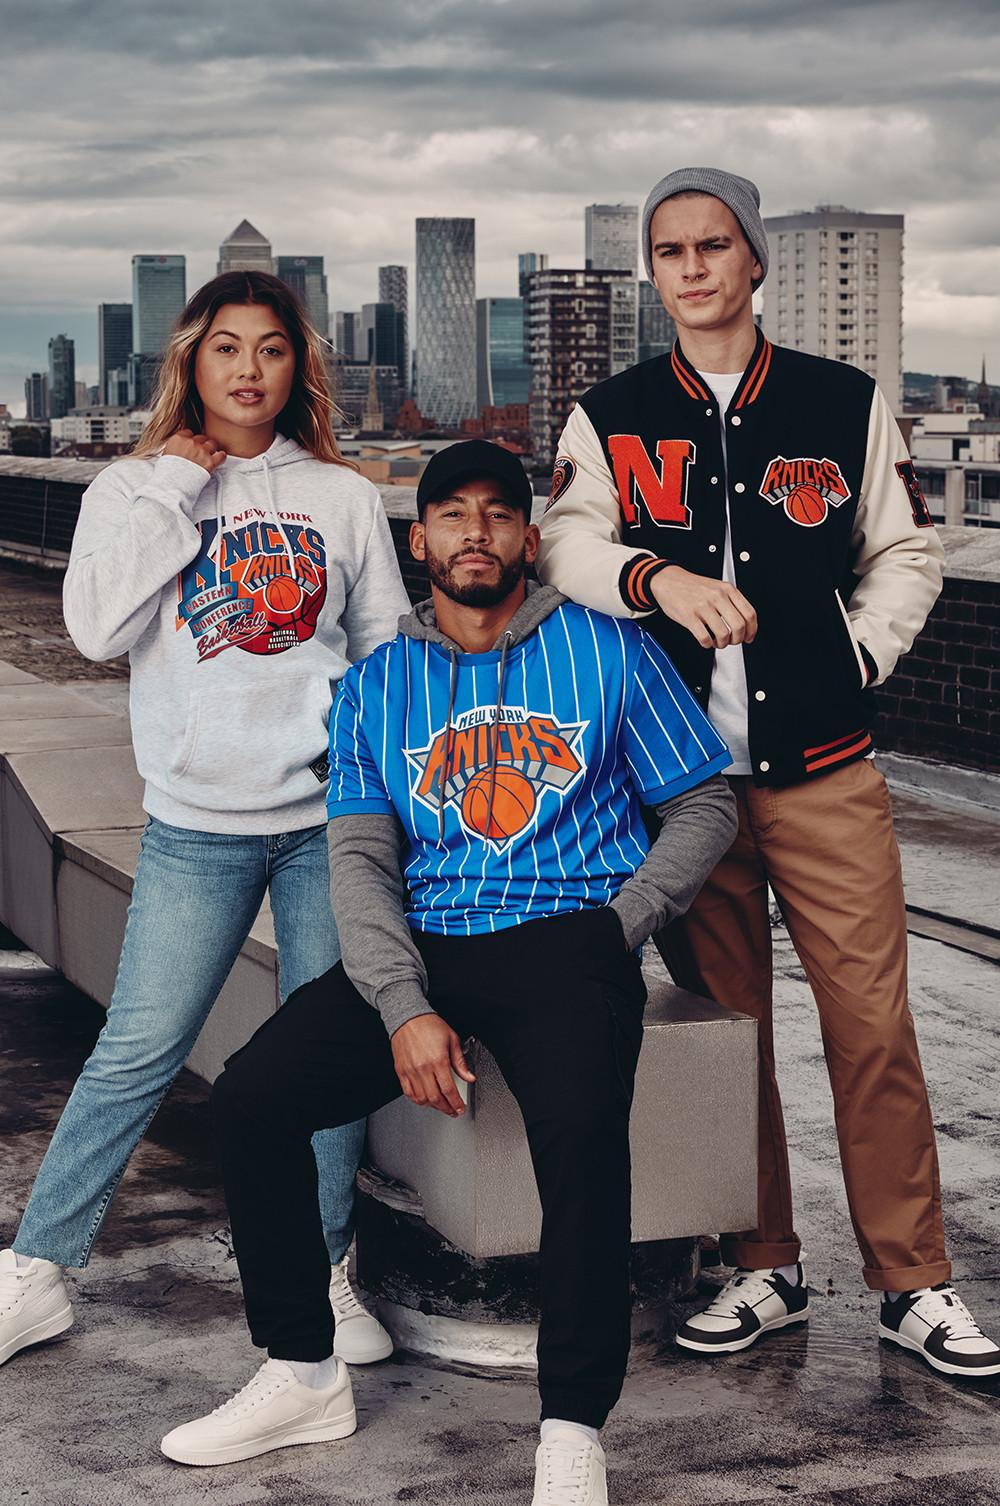 Models wear Knicks top, hoodie and jacket